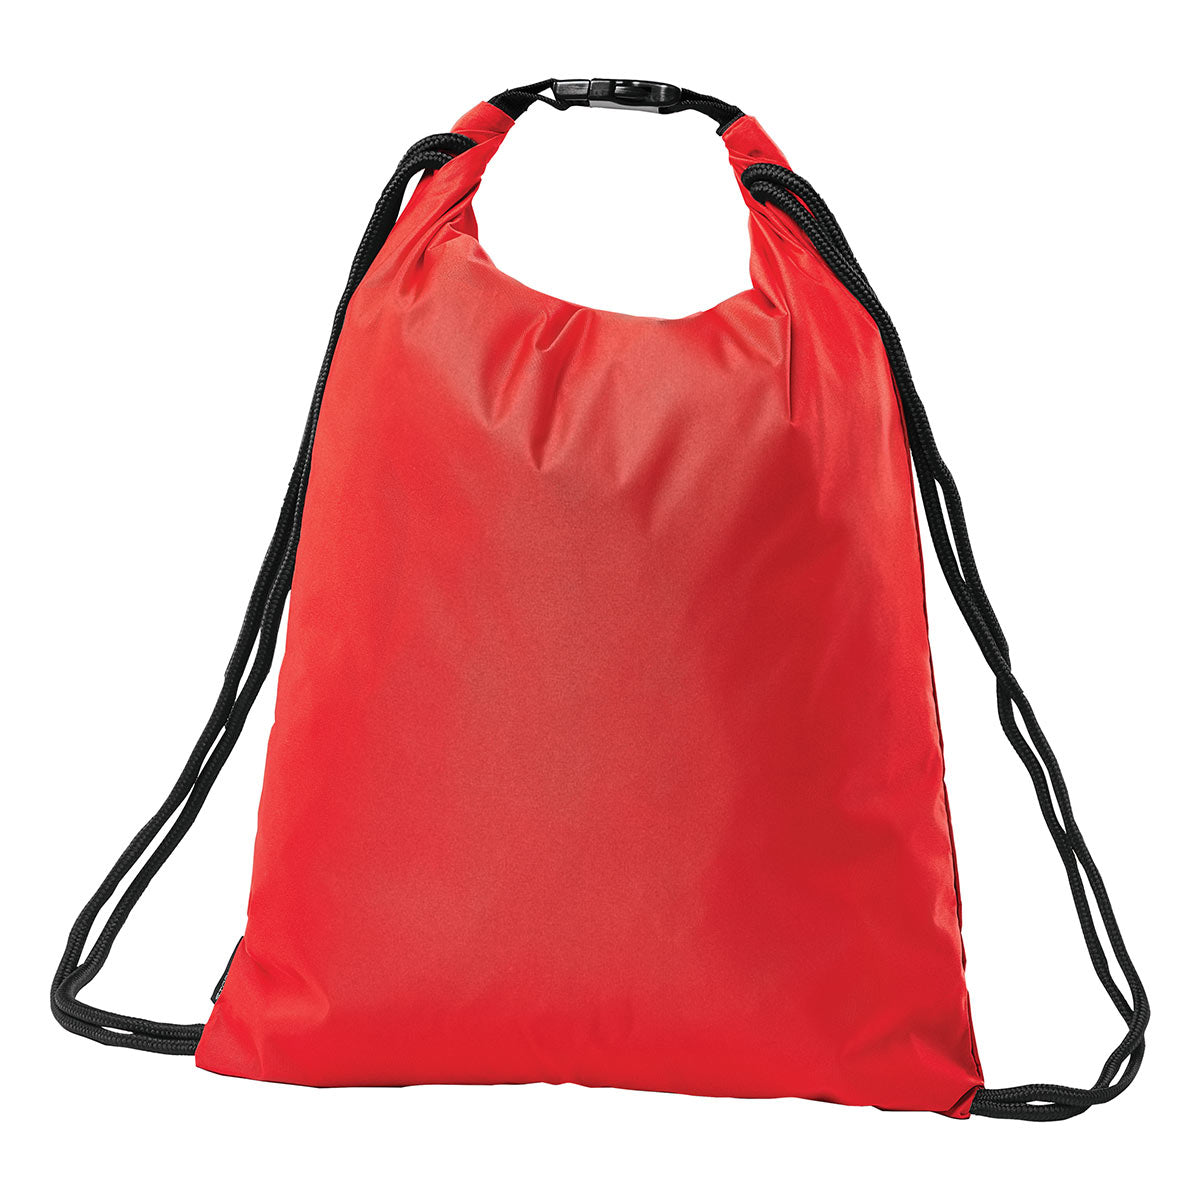 TUFFWRAPS Fleece Cinch Bag